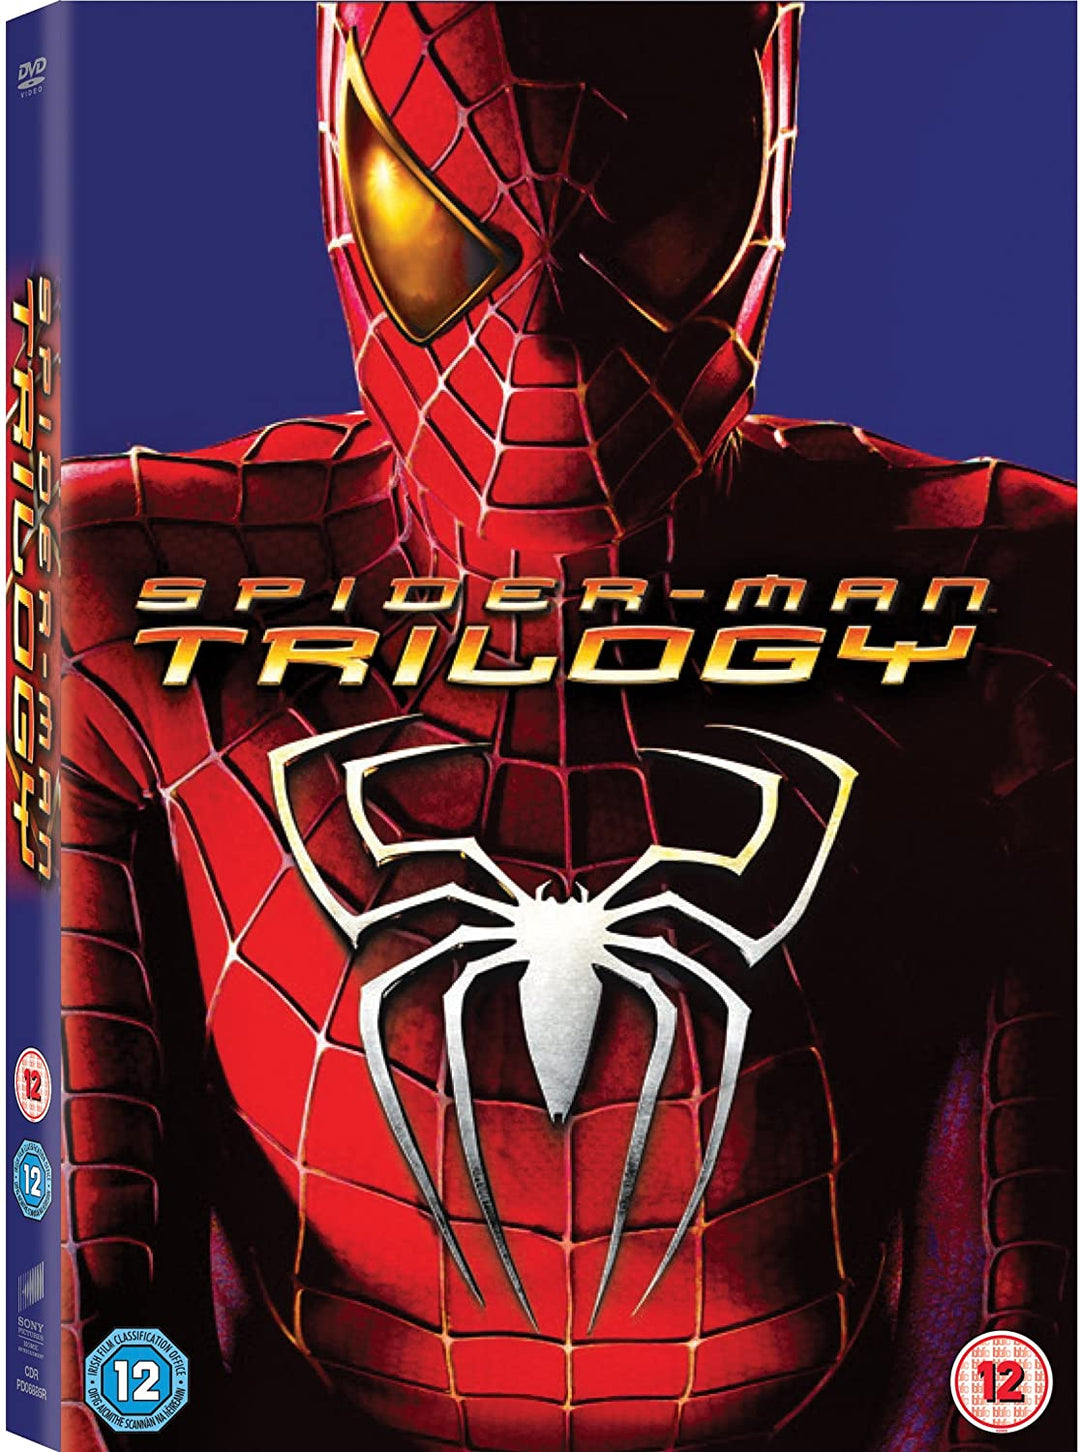 Spider-Man Trilogy - Action/Adventure [DVD]